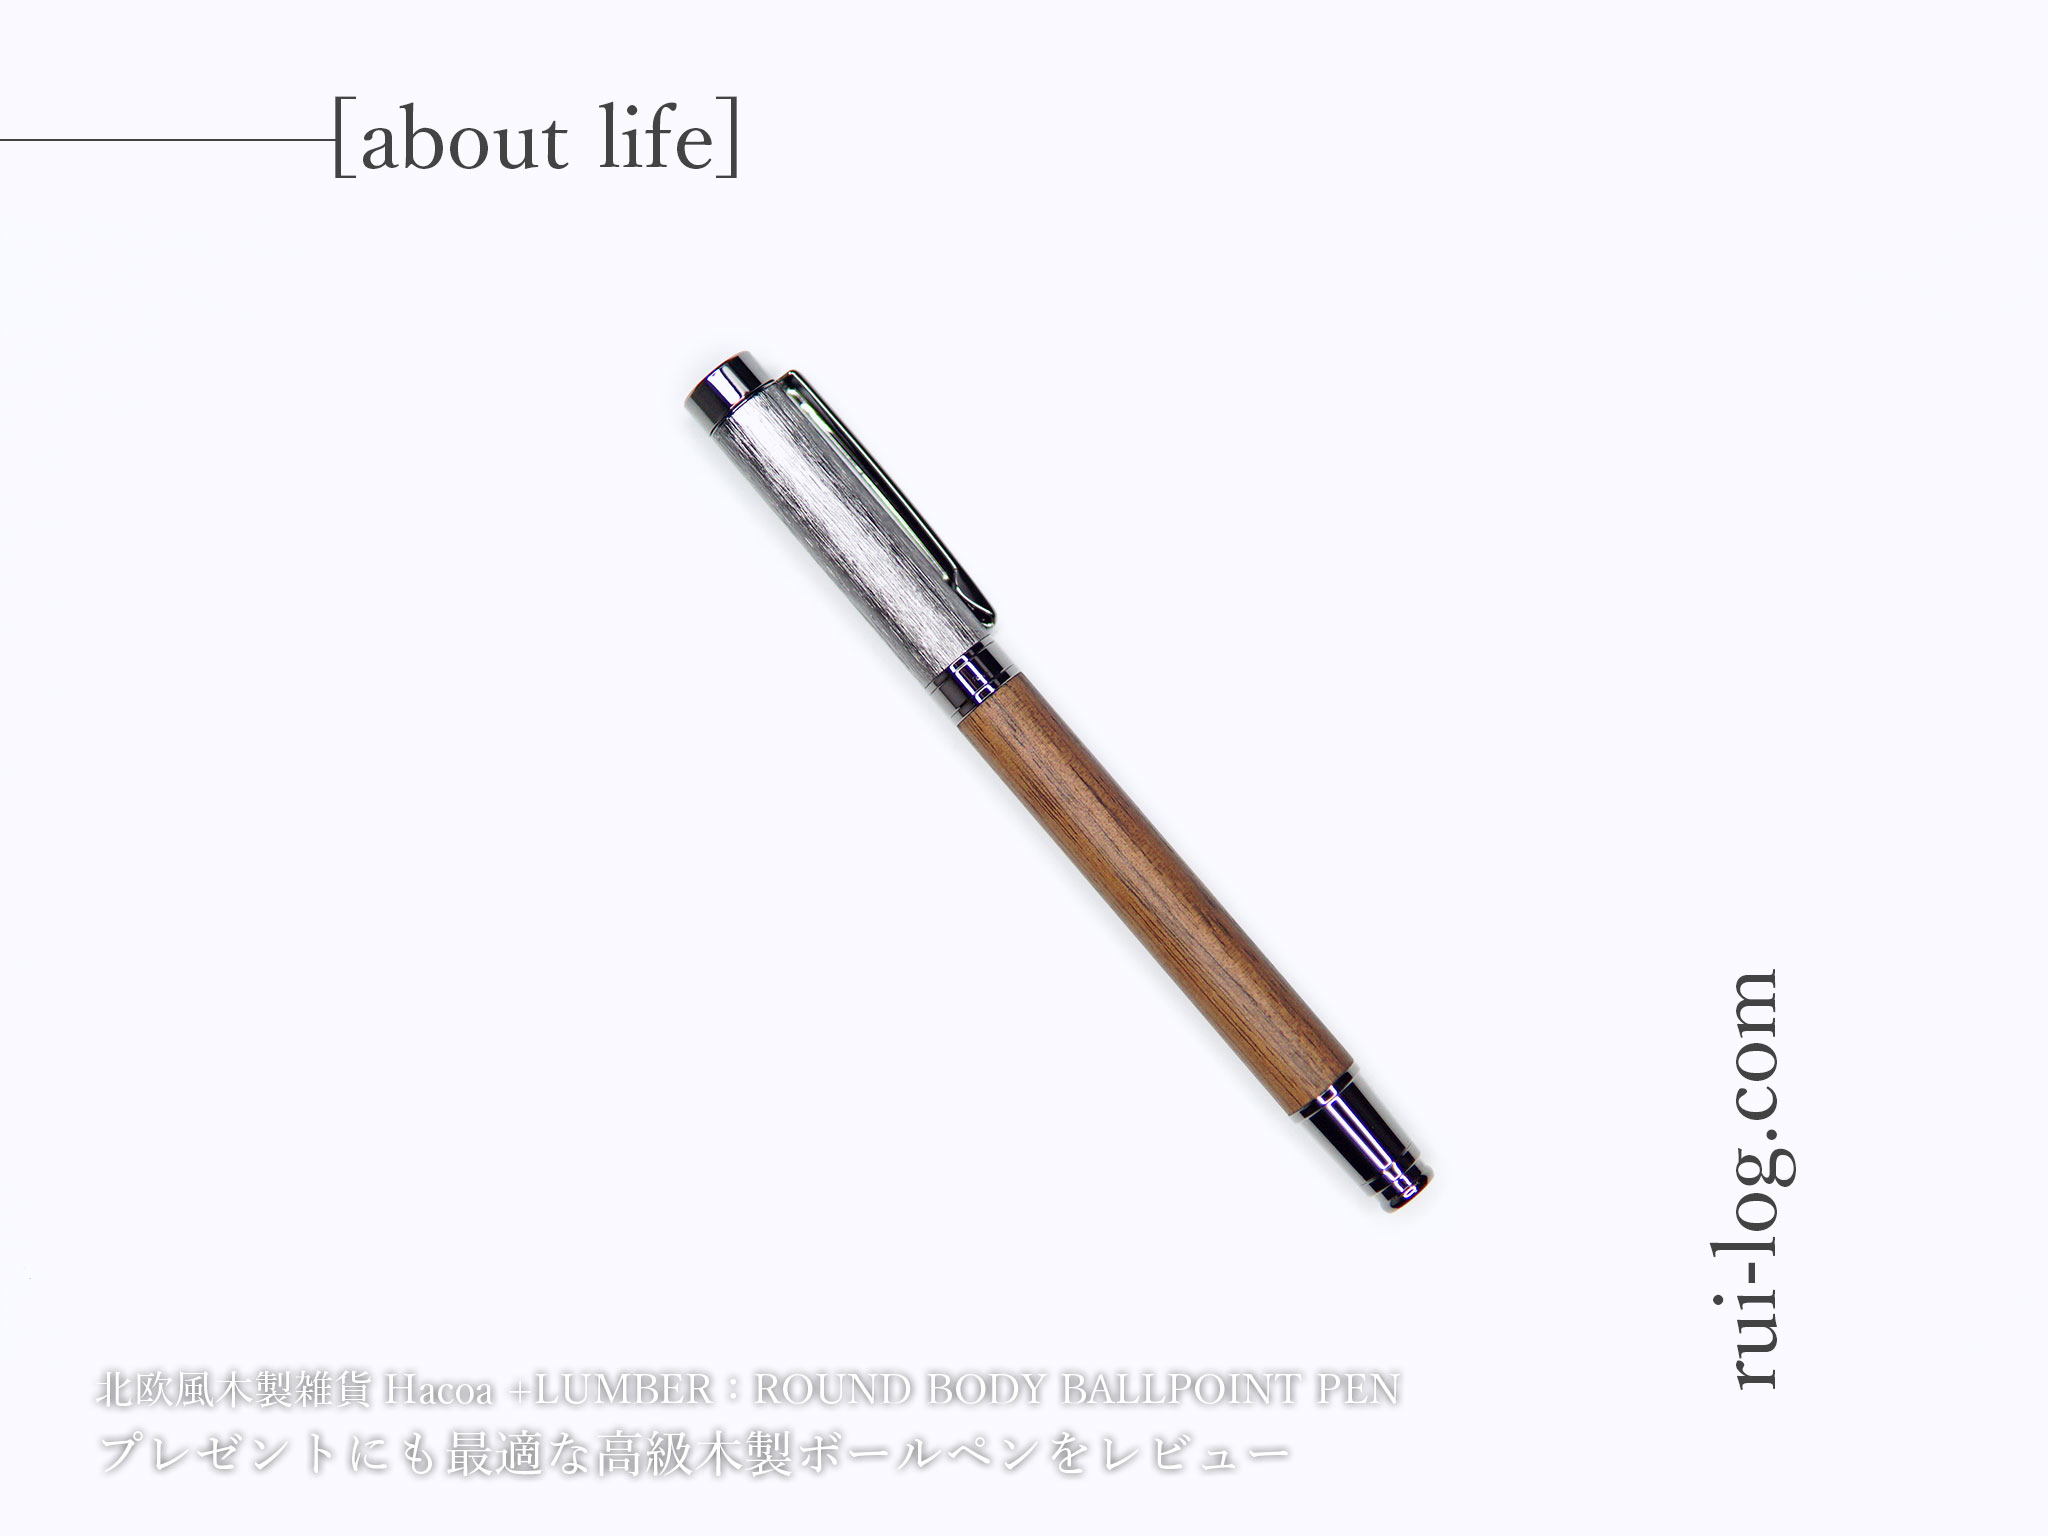 高級木製ボールペンをルイログがレビュー：Hacoa+LUMZBERラウンドボディ